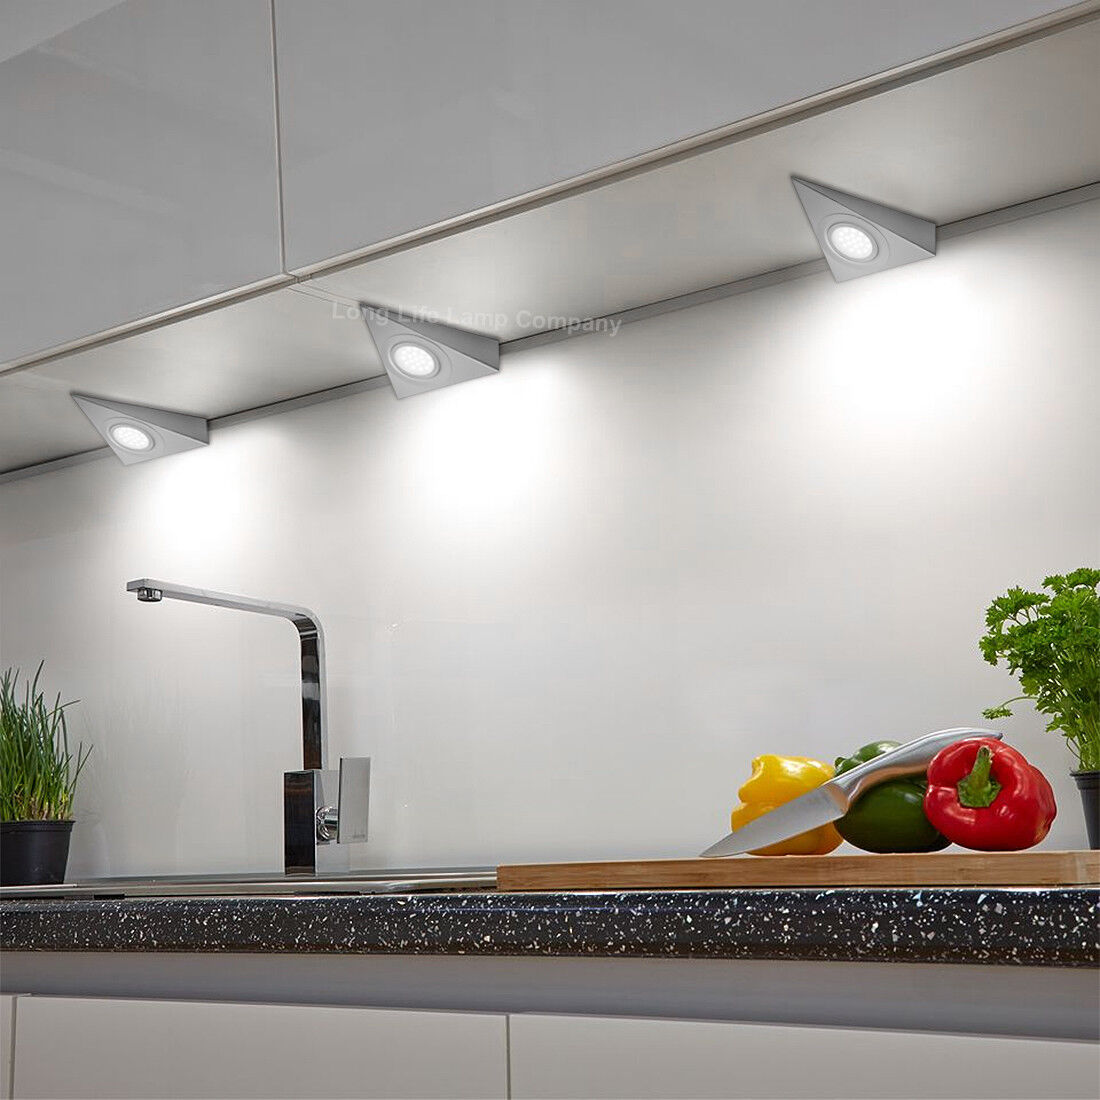 Светильник подсветка для кухни. Линейный светильник Obi Kitchen led-144. Подсветка для кухни. Подсветка для кухни под шкафы. Светодиодная подсветка столешницы.